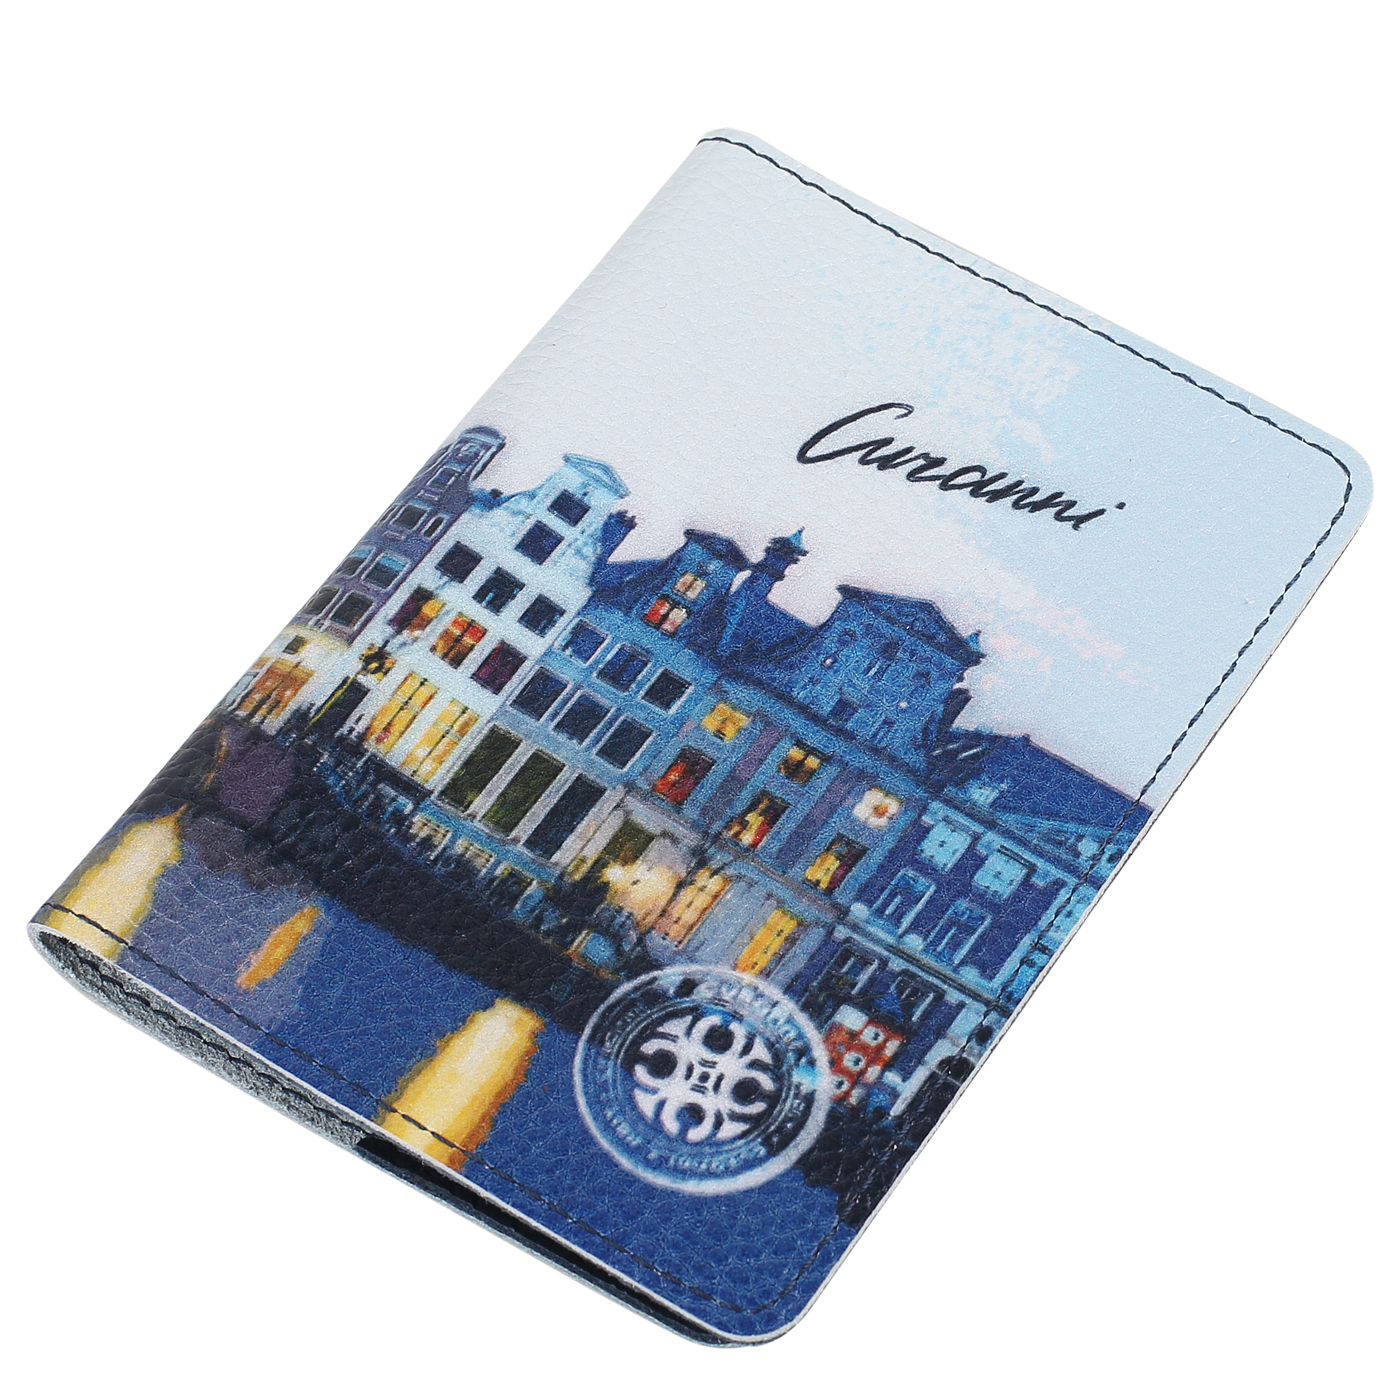 Кожаная обложка для паспорта Curanni 